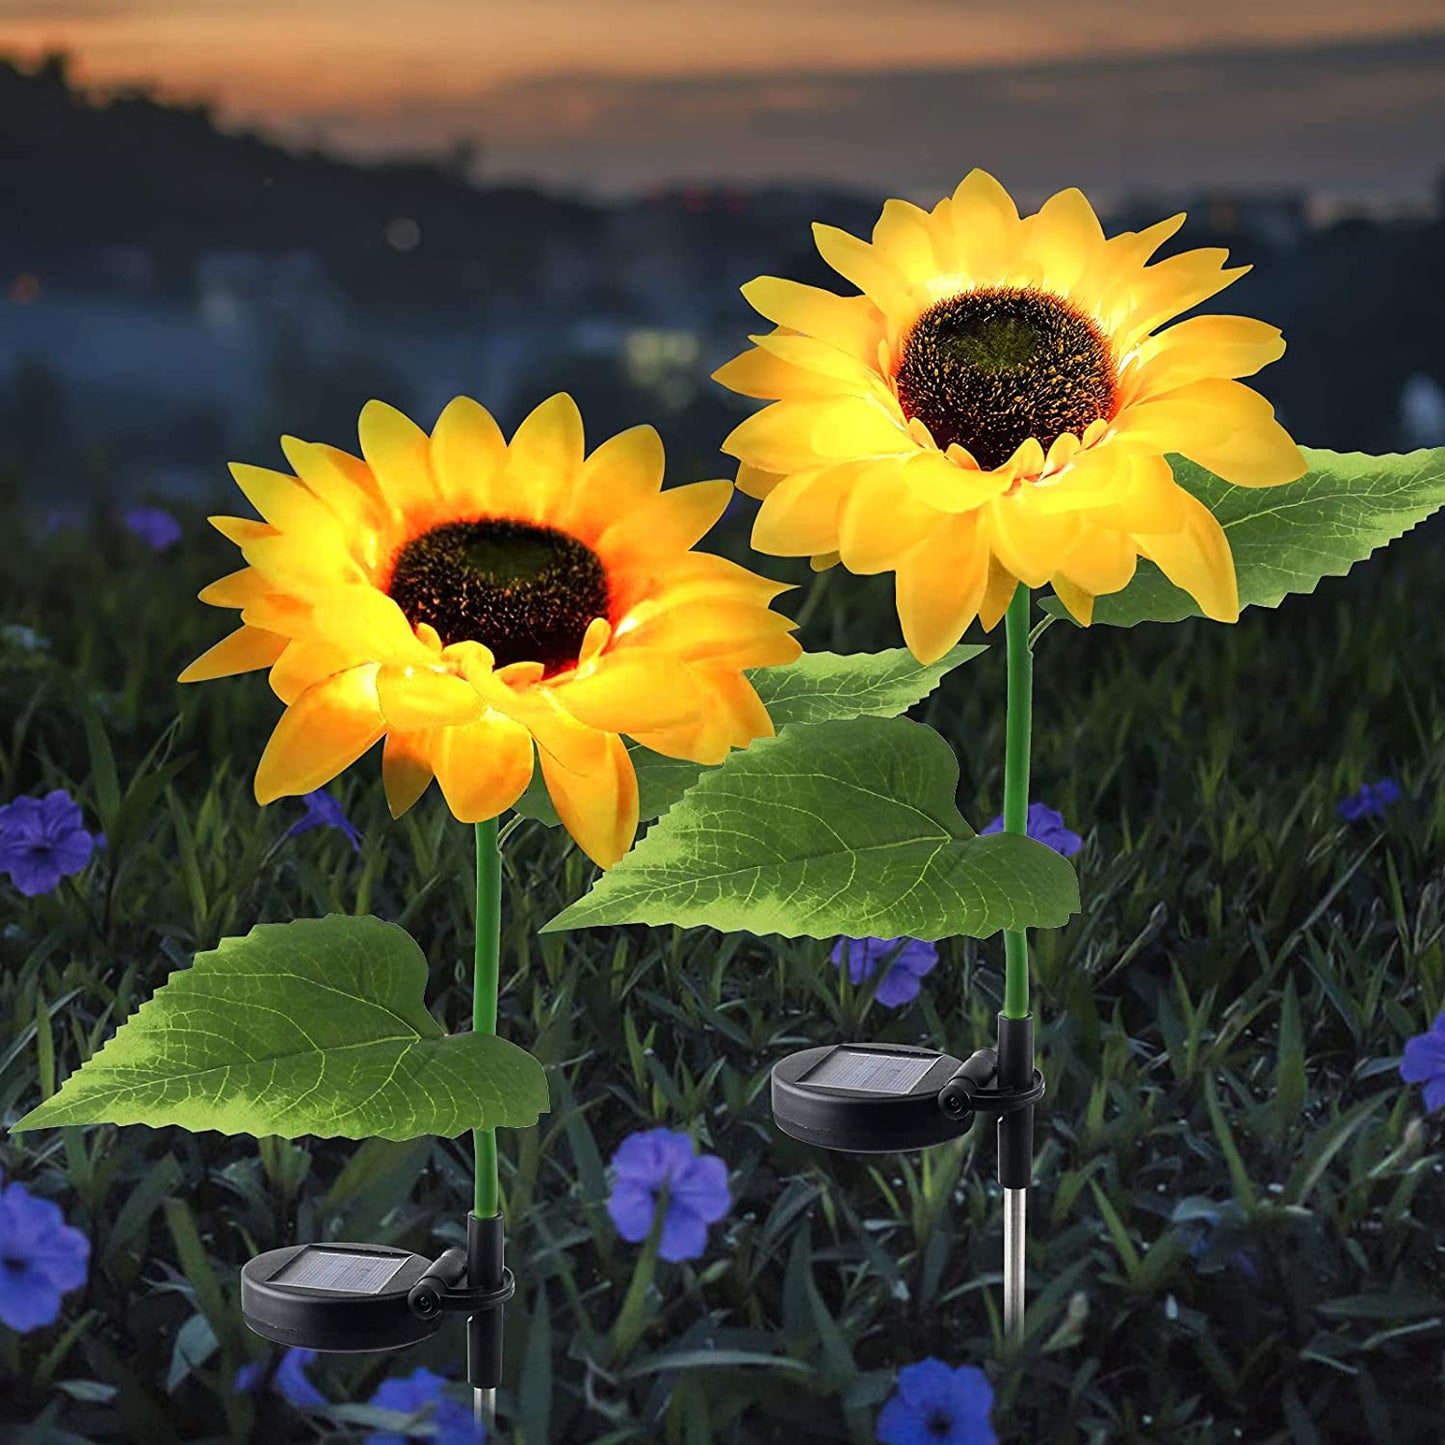 2PCS Solar Sunflowers Outside Garden Lights Waterproof Flowers Lights